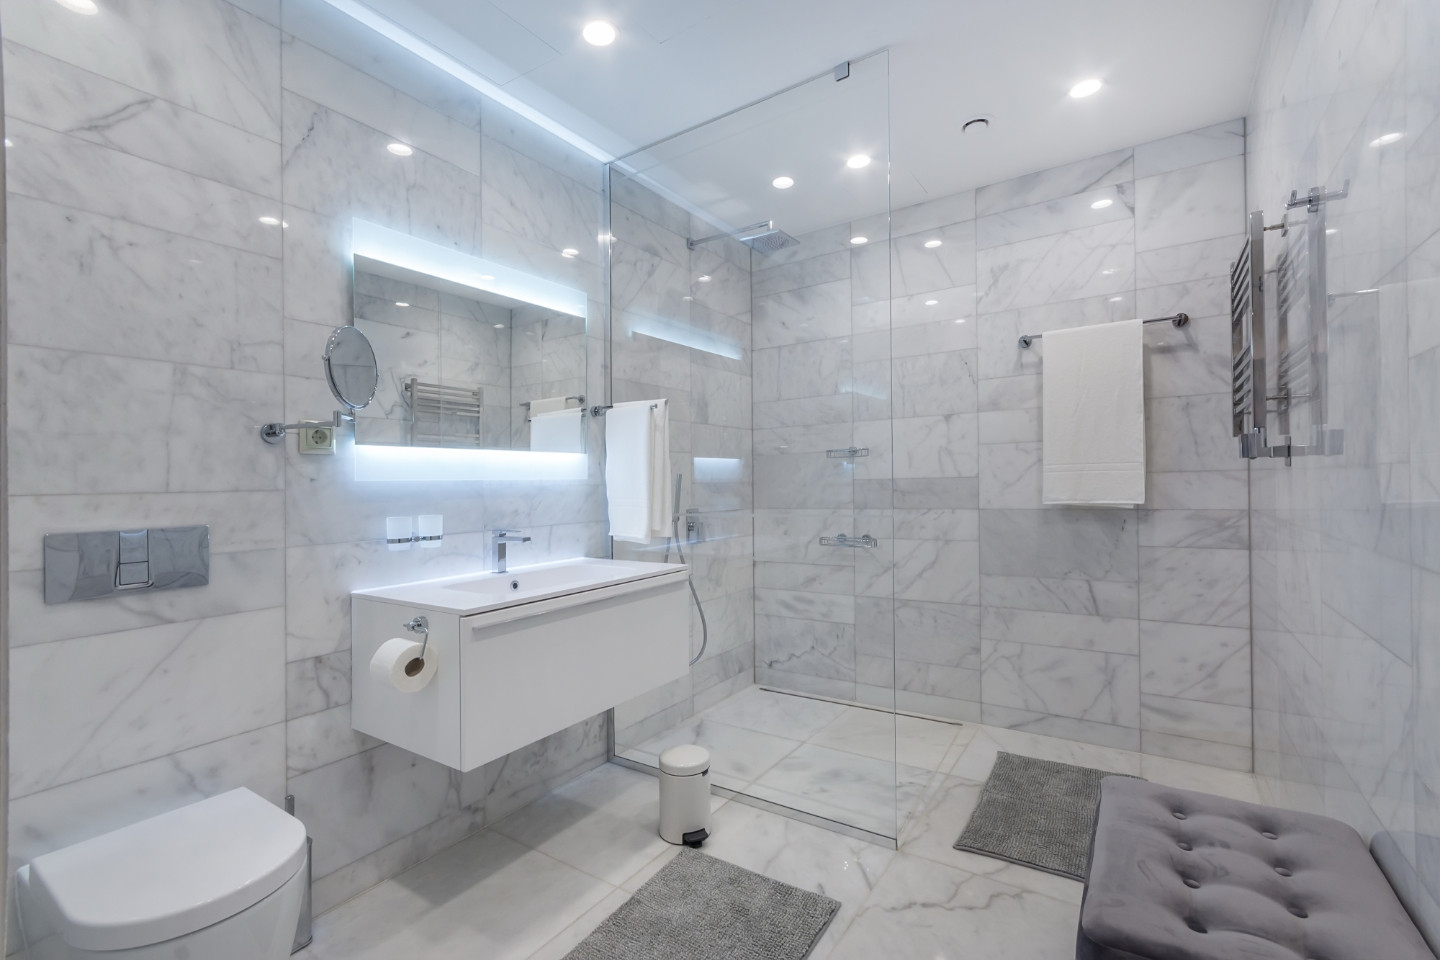 Badezimmer Deckenbeleuchtung: Inspiration &amp; Tipps | Obi regarding Badezimmer Beleuchtung Decke